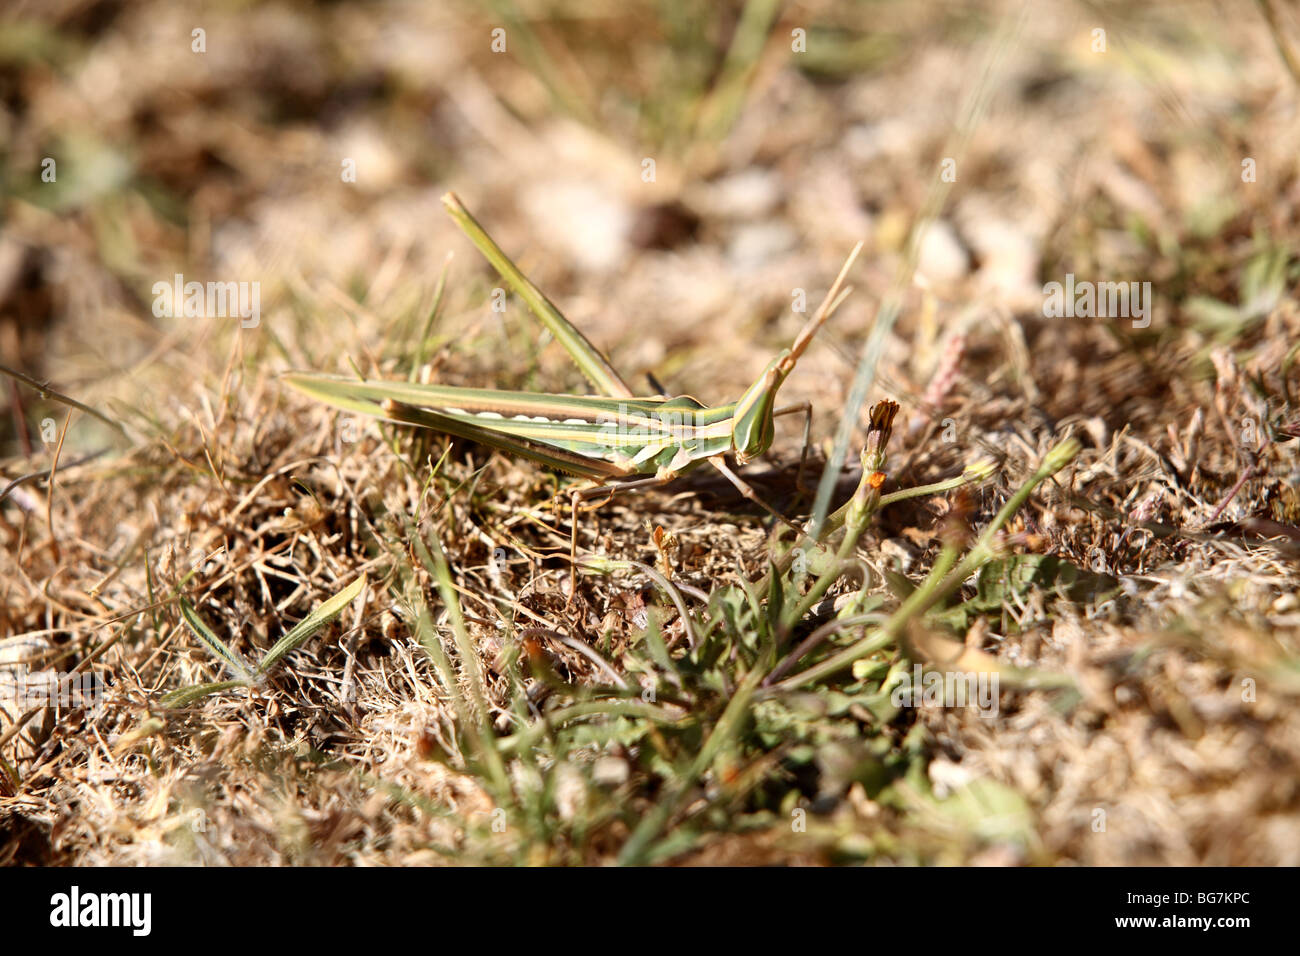 Un Acrida turrita grasshopper à l'état sauvage en Crète, Grèce. Banque D'Images